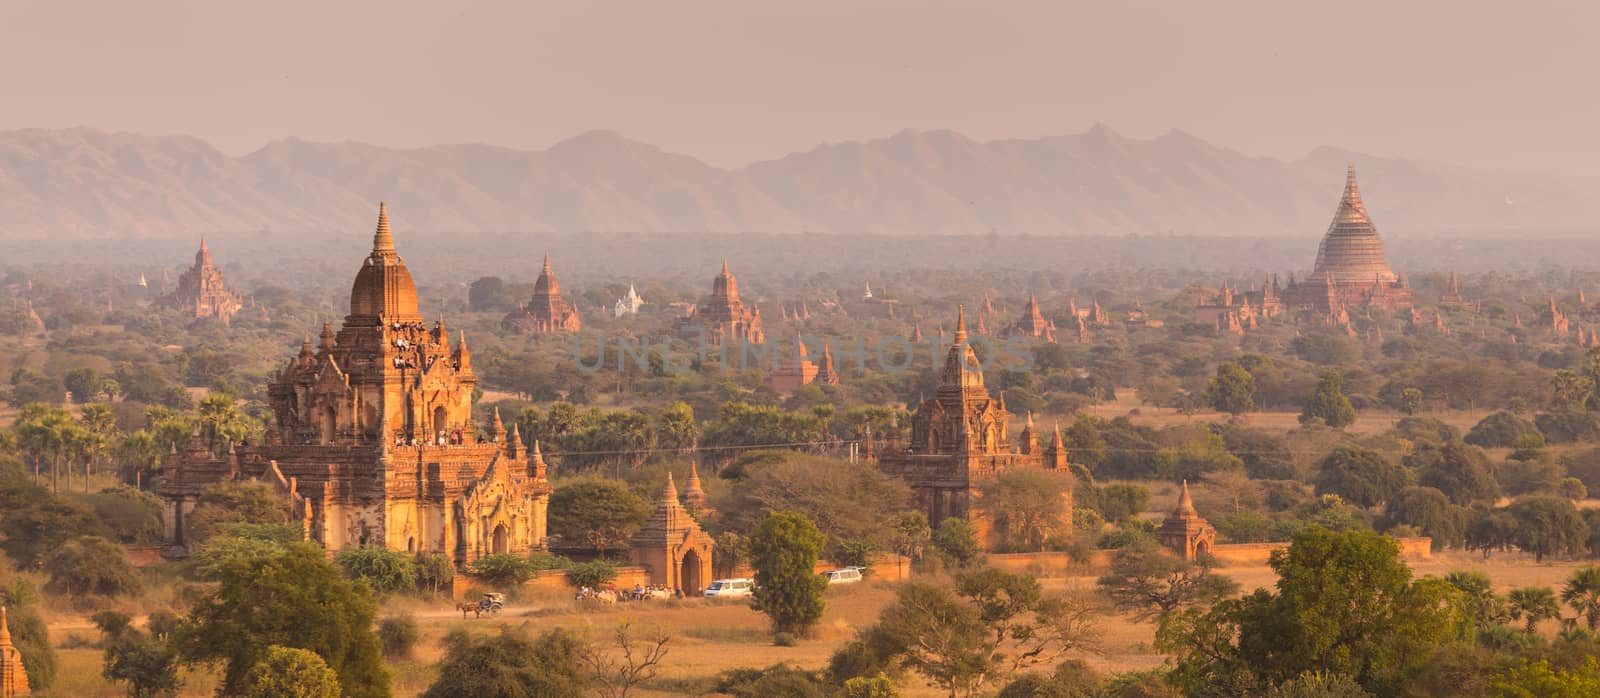 Tamples of Bagan, Burma, Myanmar, Asia. by kasto